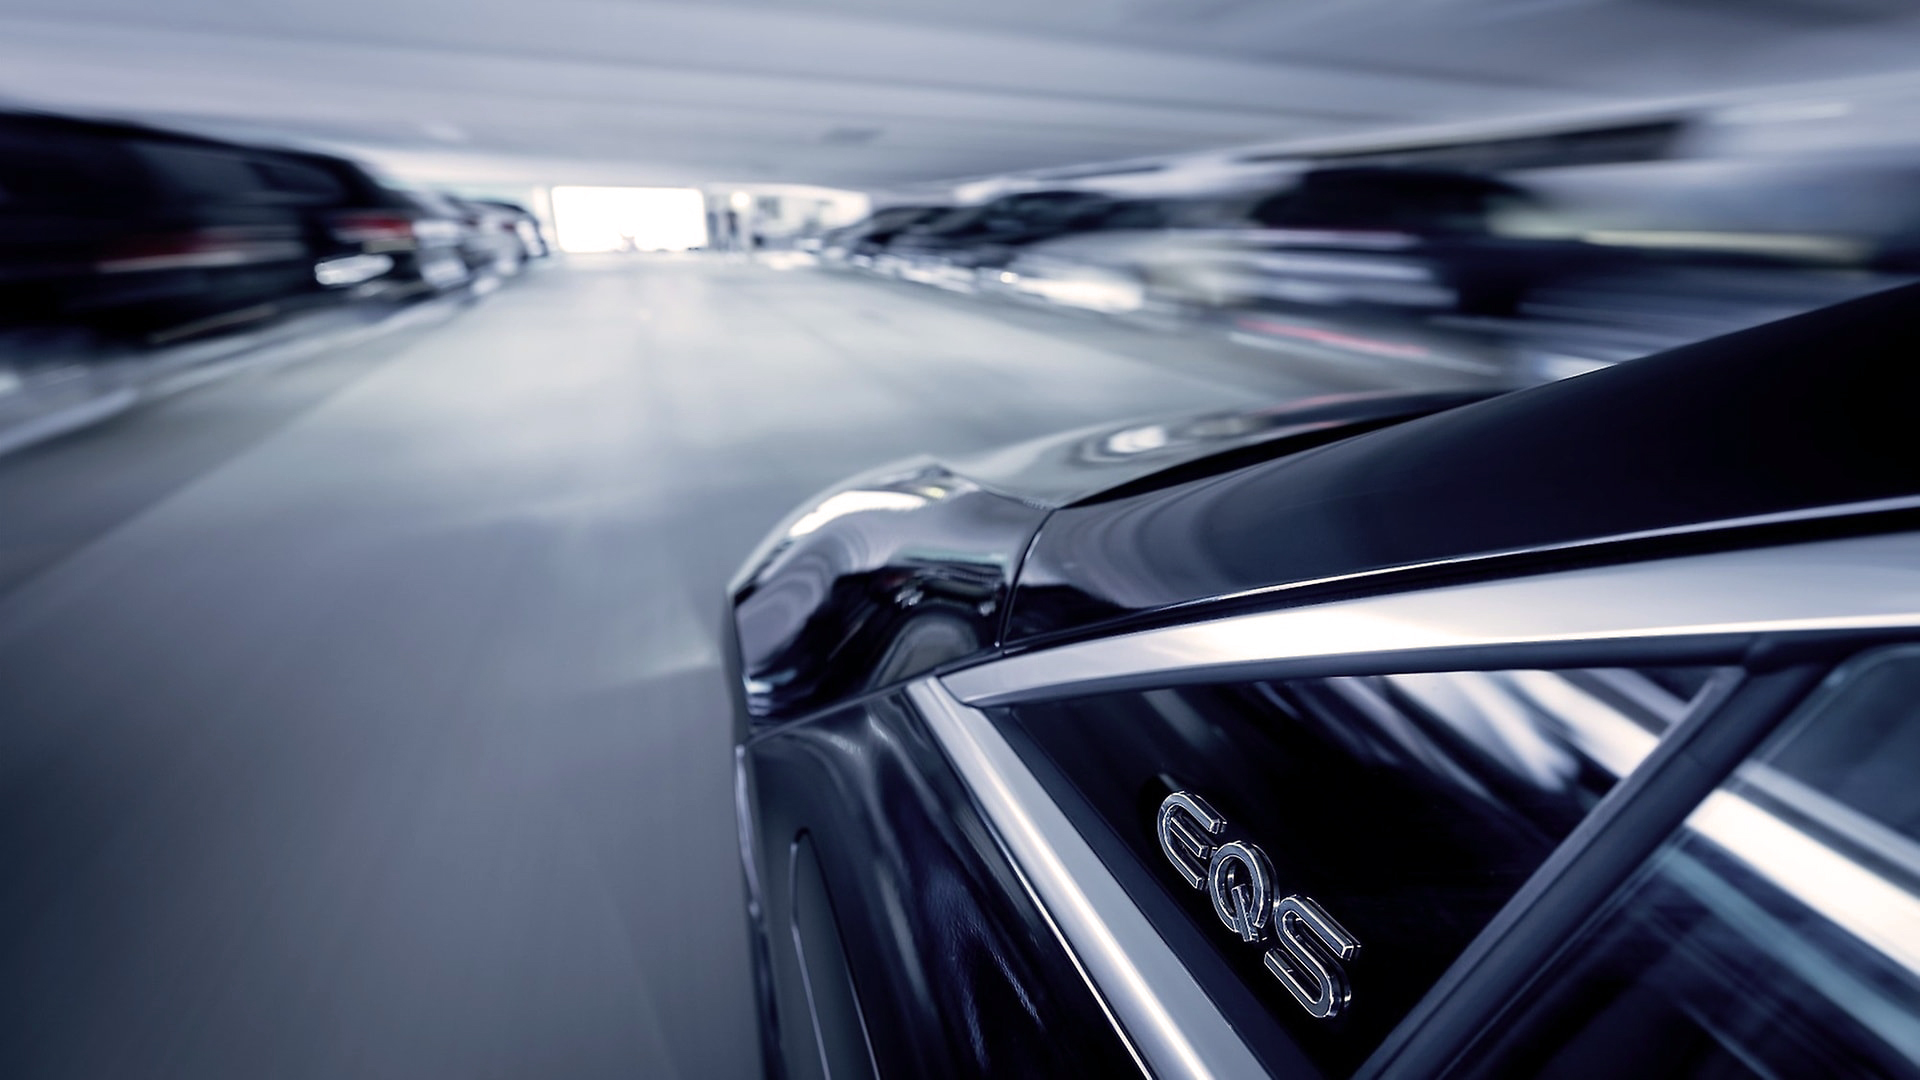 Los sensores del estacionamiento están vinculados a los del automóvil de modo de asegurar un entorno seguro para el funcionamiento autónomo